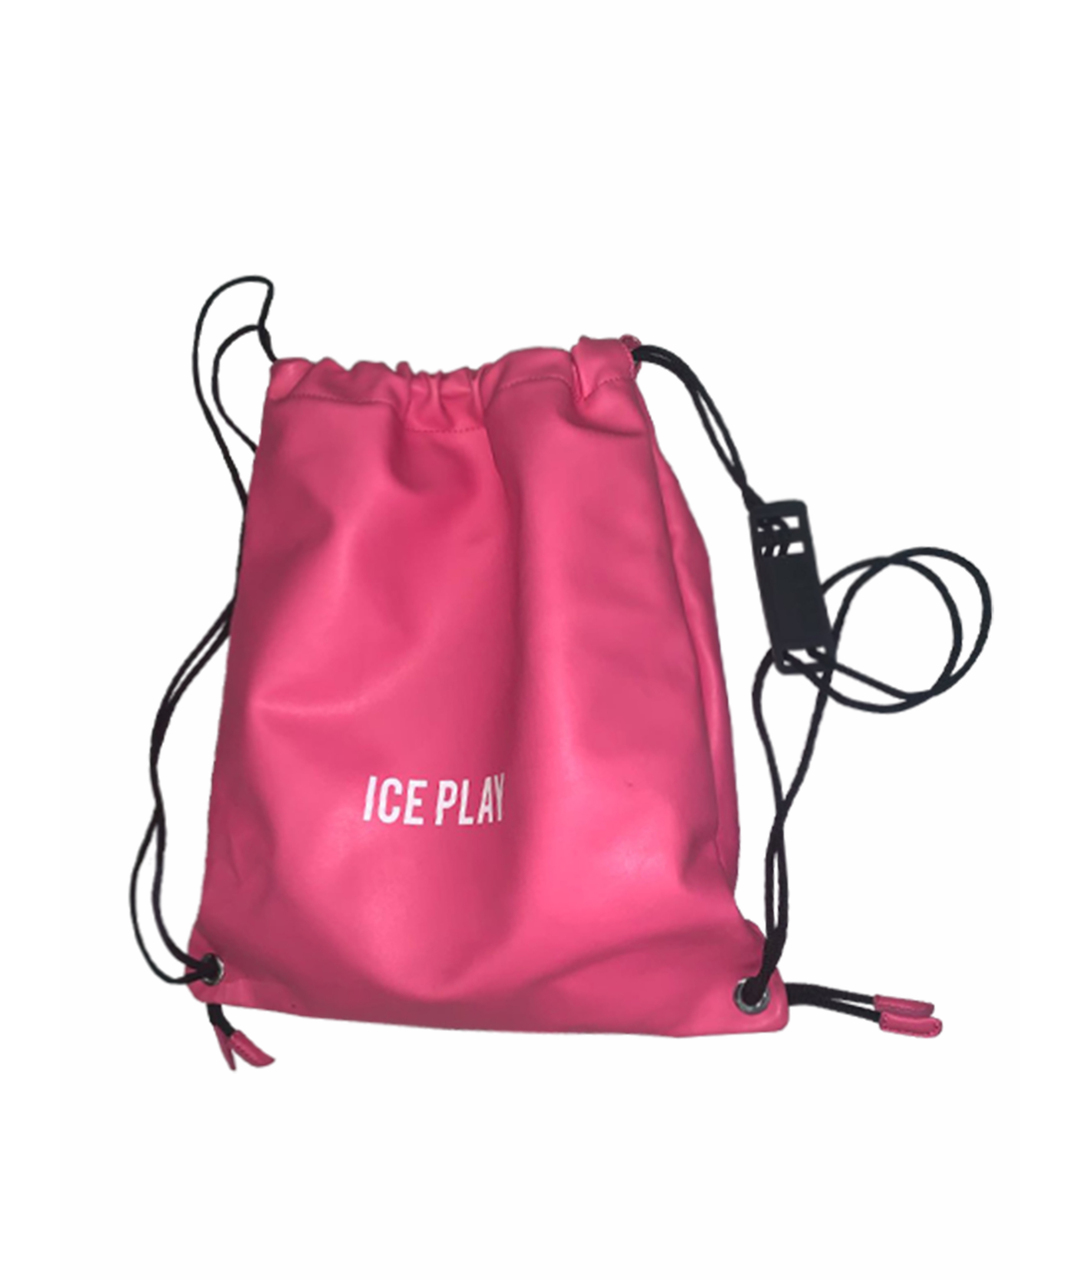 ICE PLAY Розовый рюкзак из искусственной кожи, фото 1